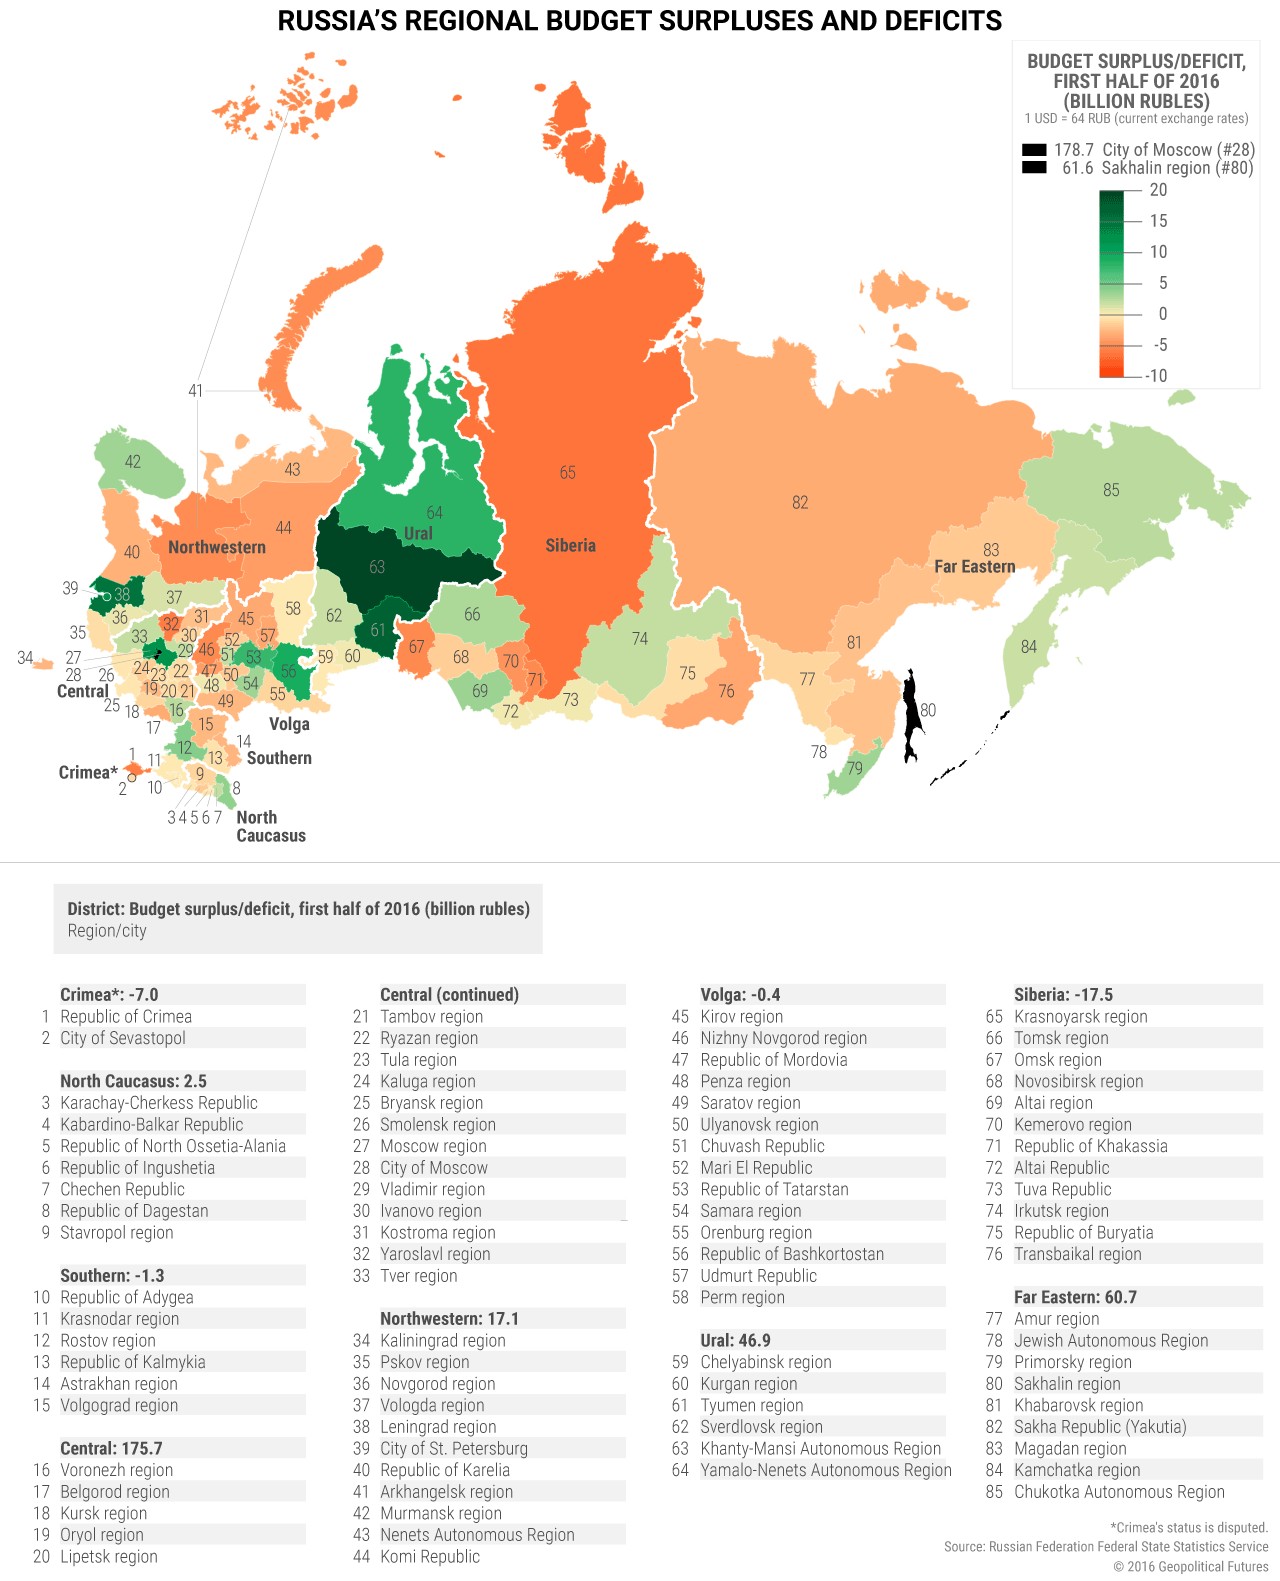 Regionalne deficyty i nadwyżki budżetowe w Rosji w 2016 roku